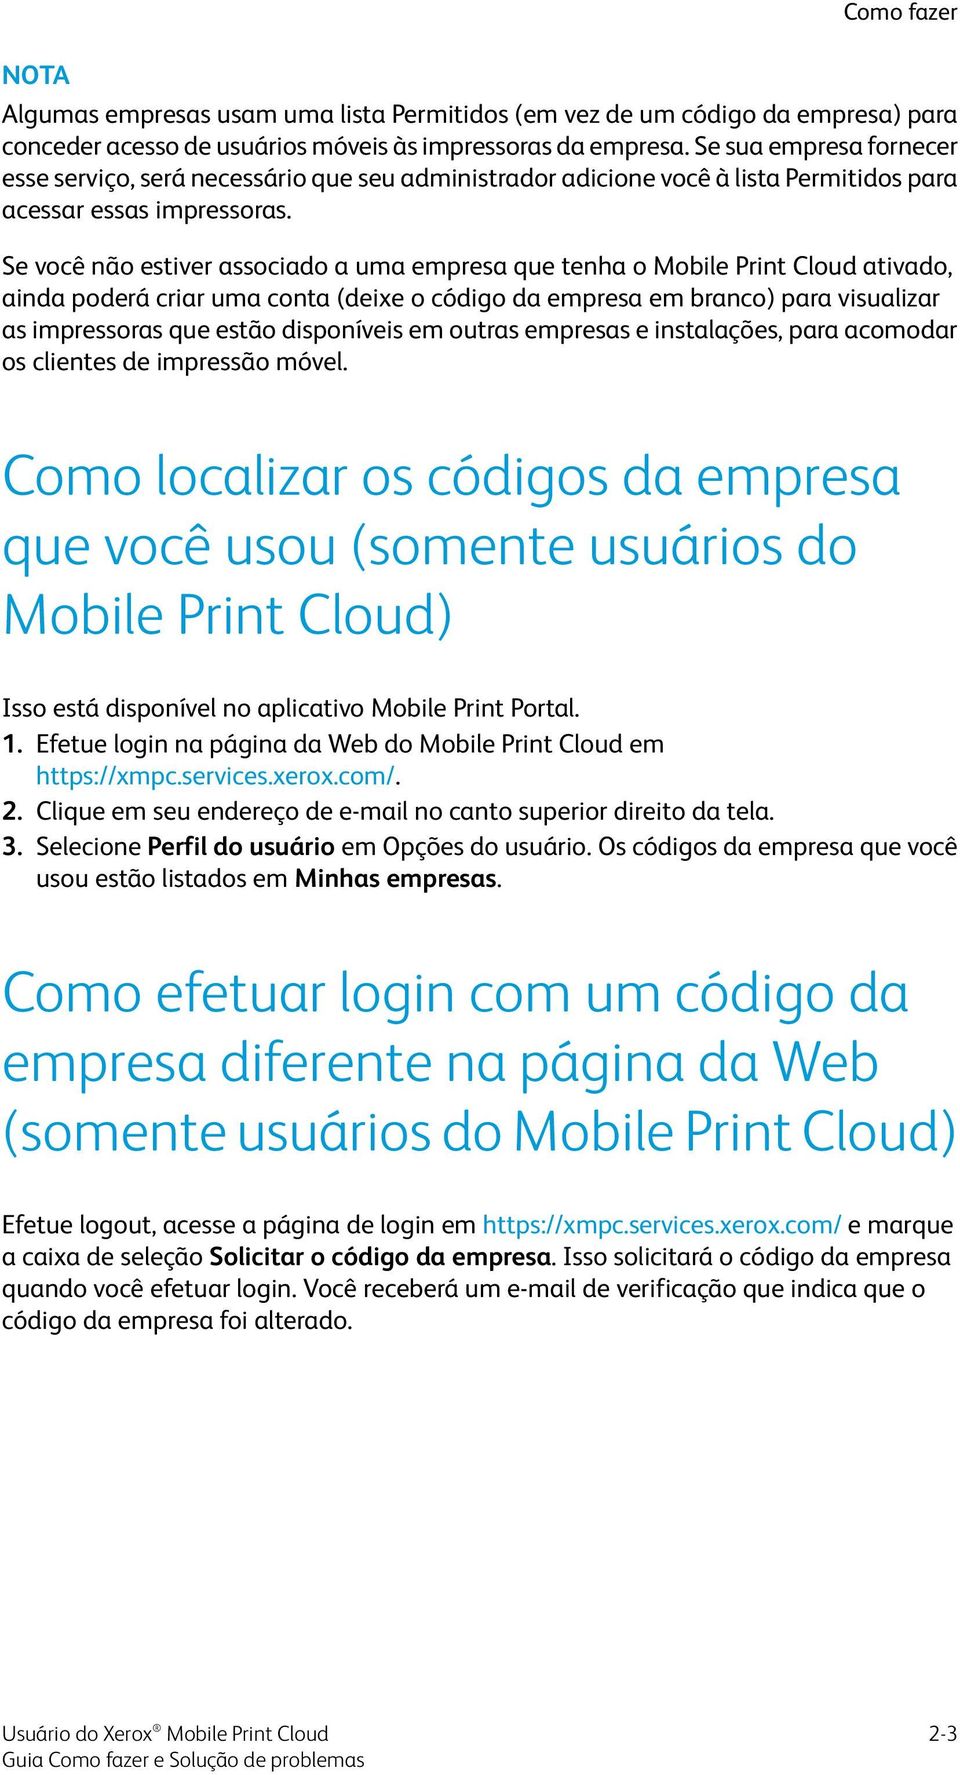 Se você não estiver associado a uma empresa que tenha o Mobile Print Cloud ativado, ainda poderá criar uma conta (deixe o código da empresa em branco) para visualizar as impressoras que estão